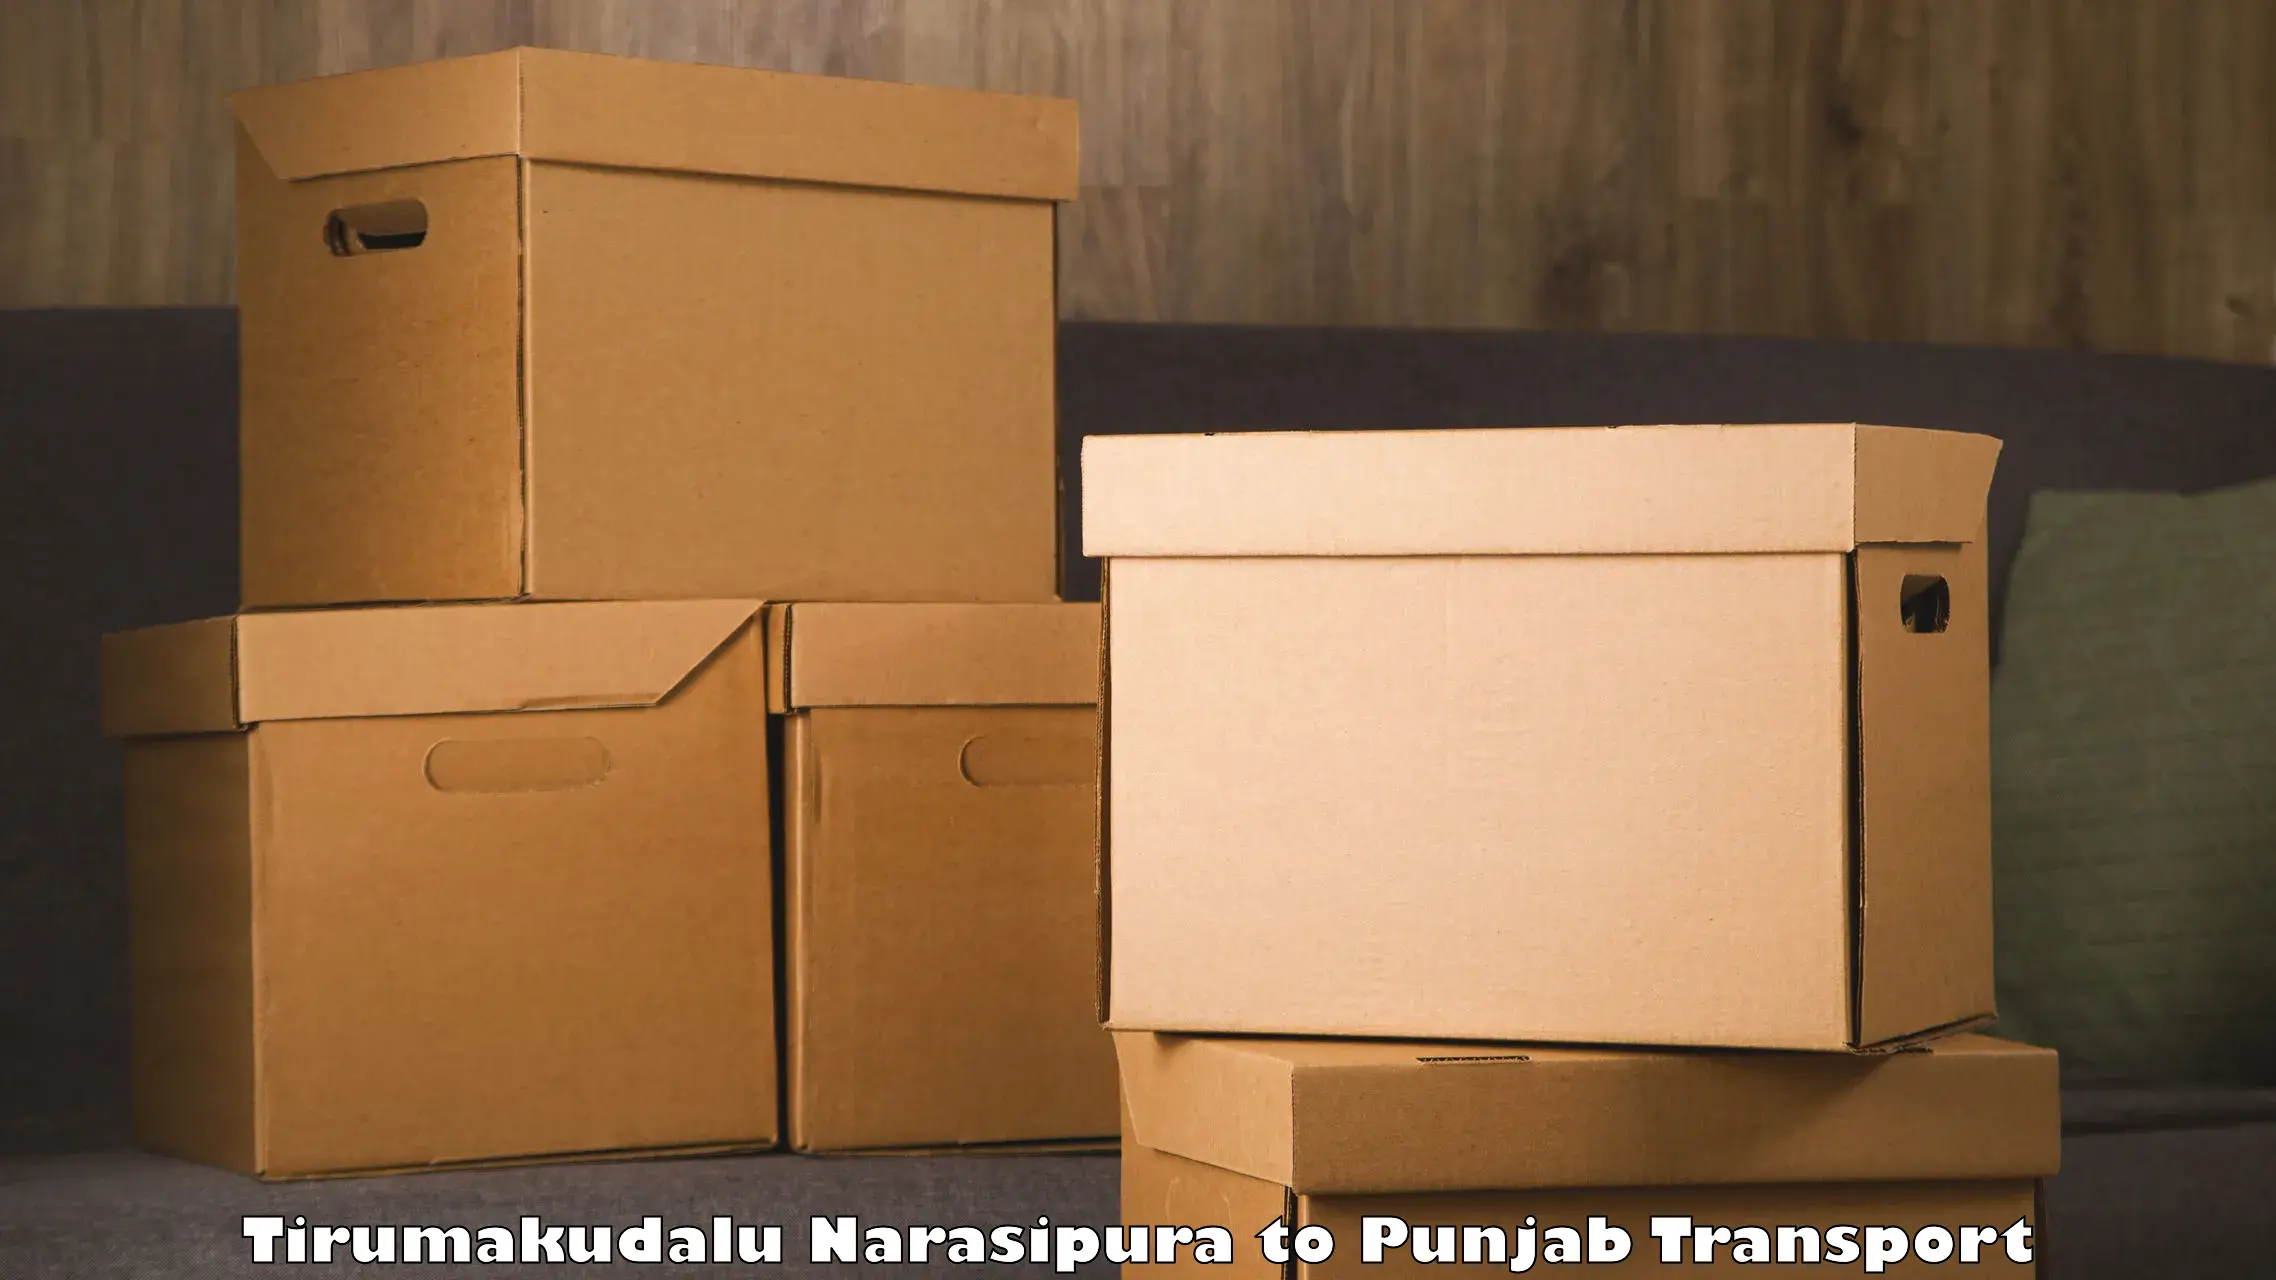 Nearby transport service Tirumakudalu Narasipura to Punjab